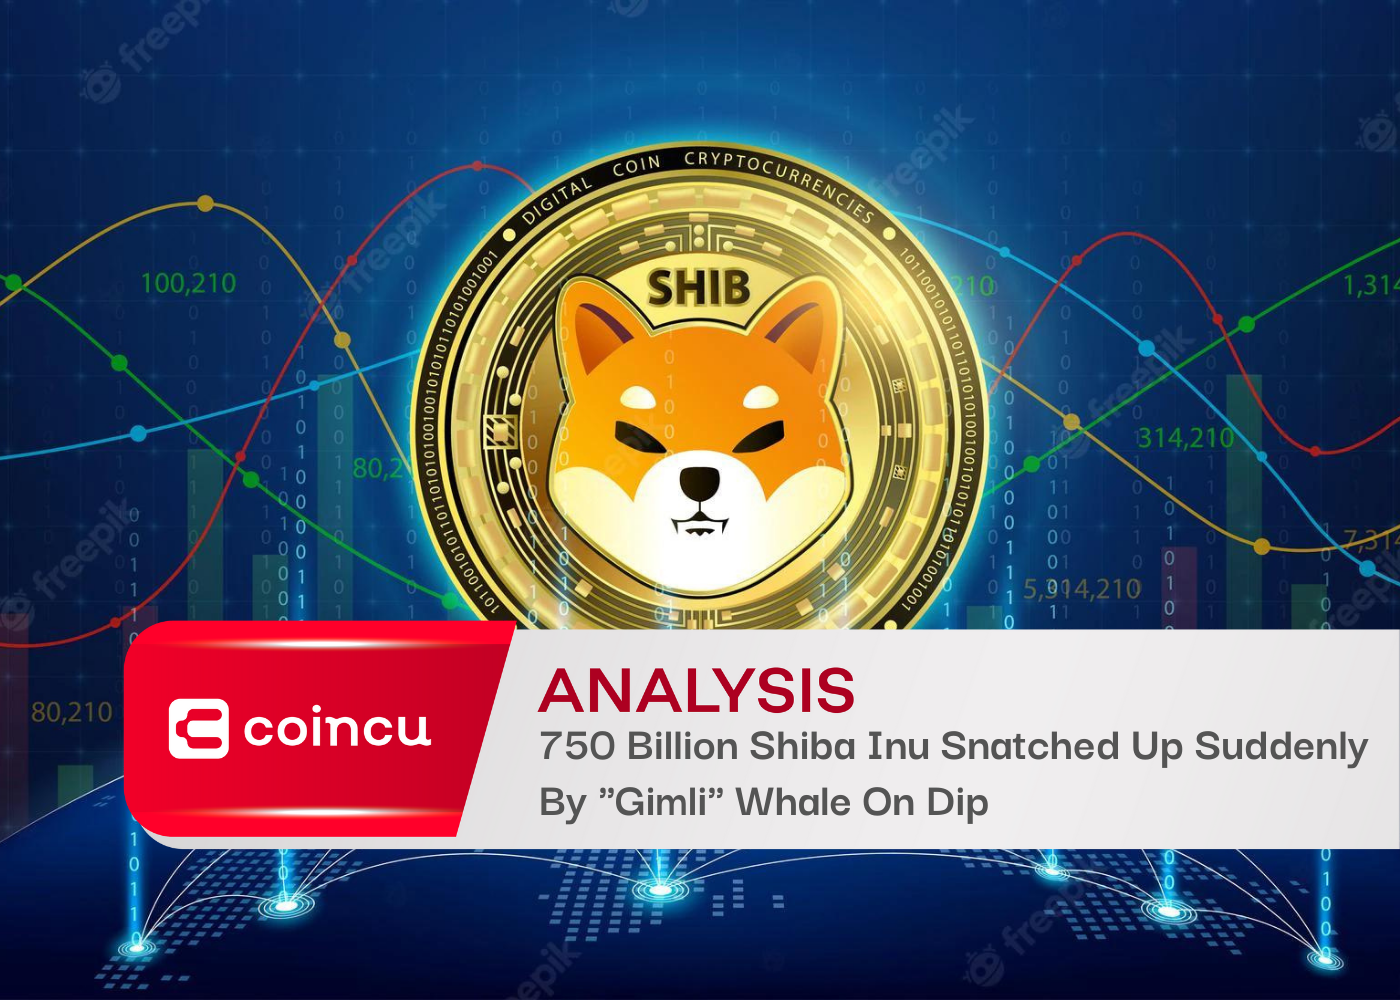 750 Billion Shiba Inu Snatched Up Suddenly